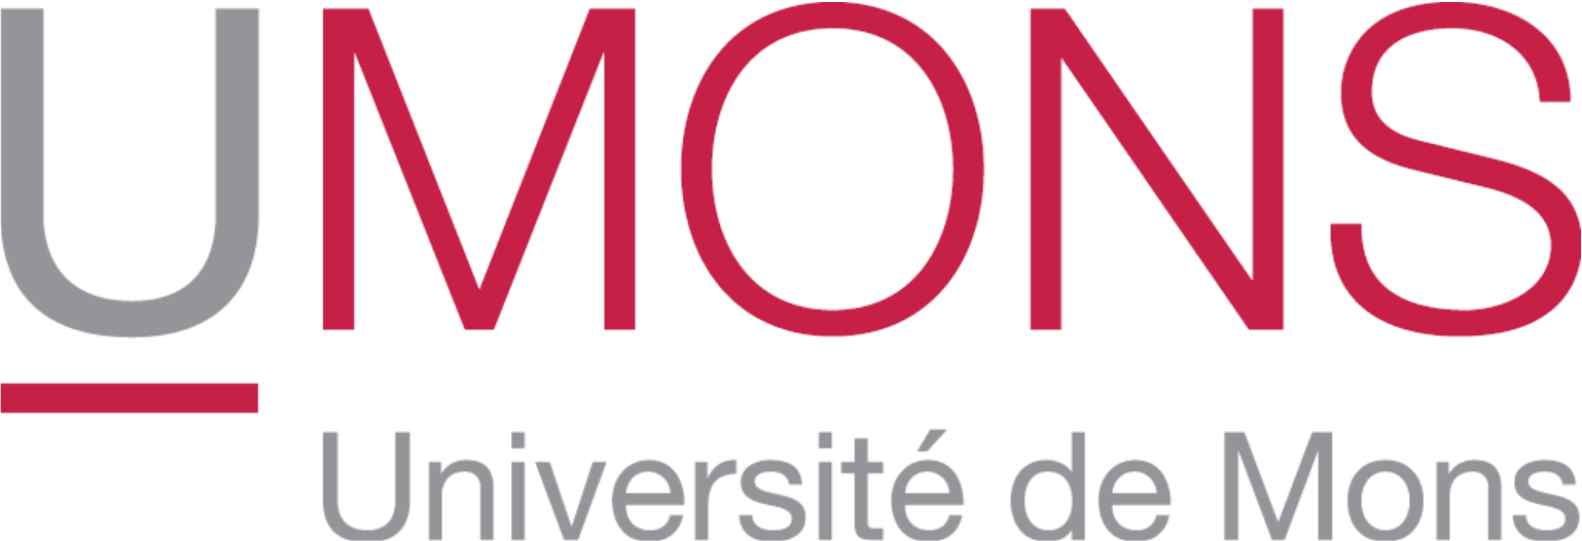 University of Mons, Belgium